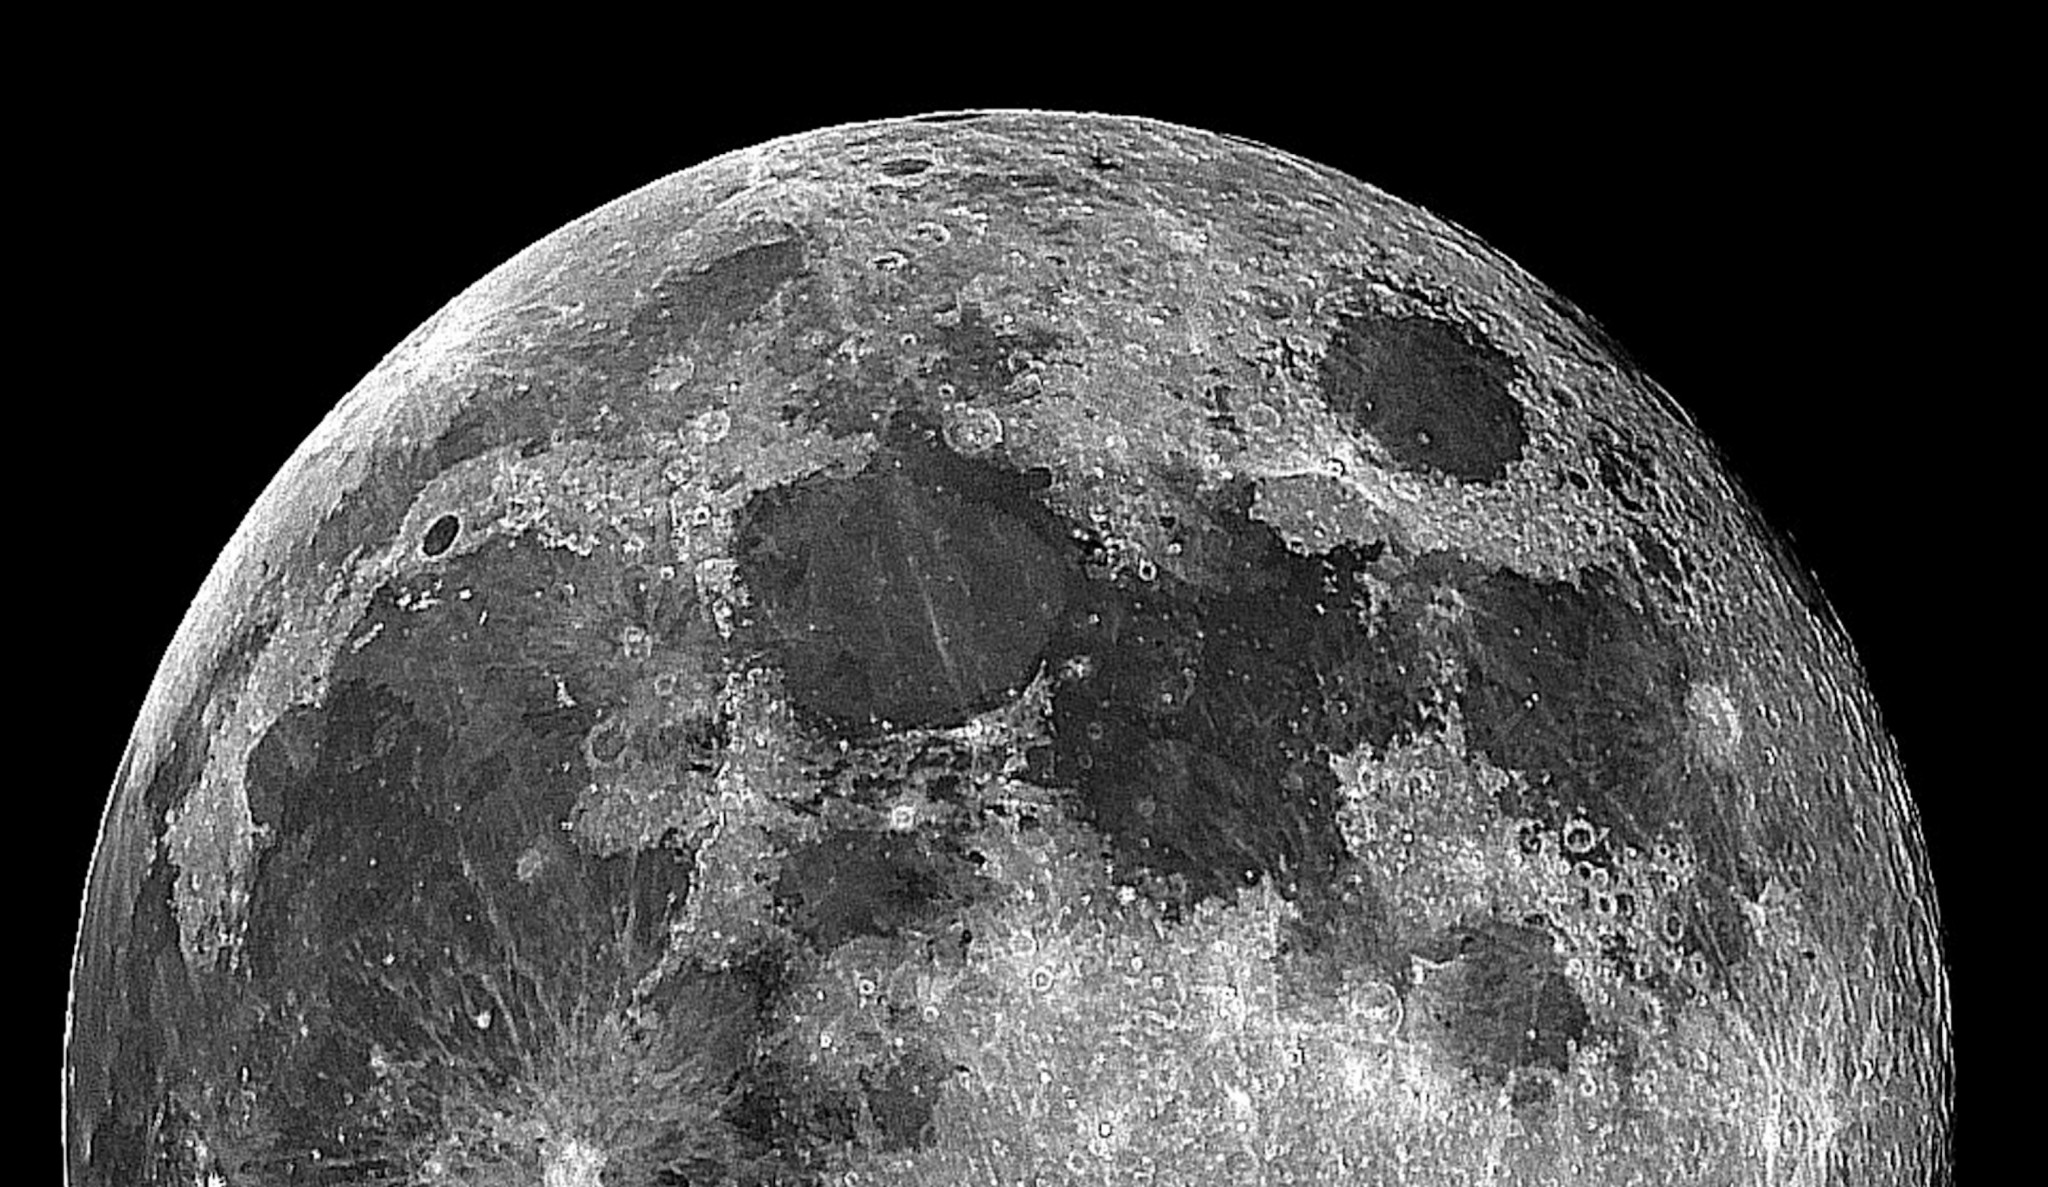 luna wallpaper hd,luna,bianco e nero,fotografia in bianco e nero,oggetto astronomico,monocromatico